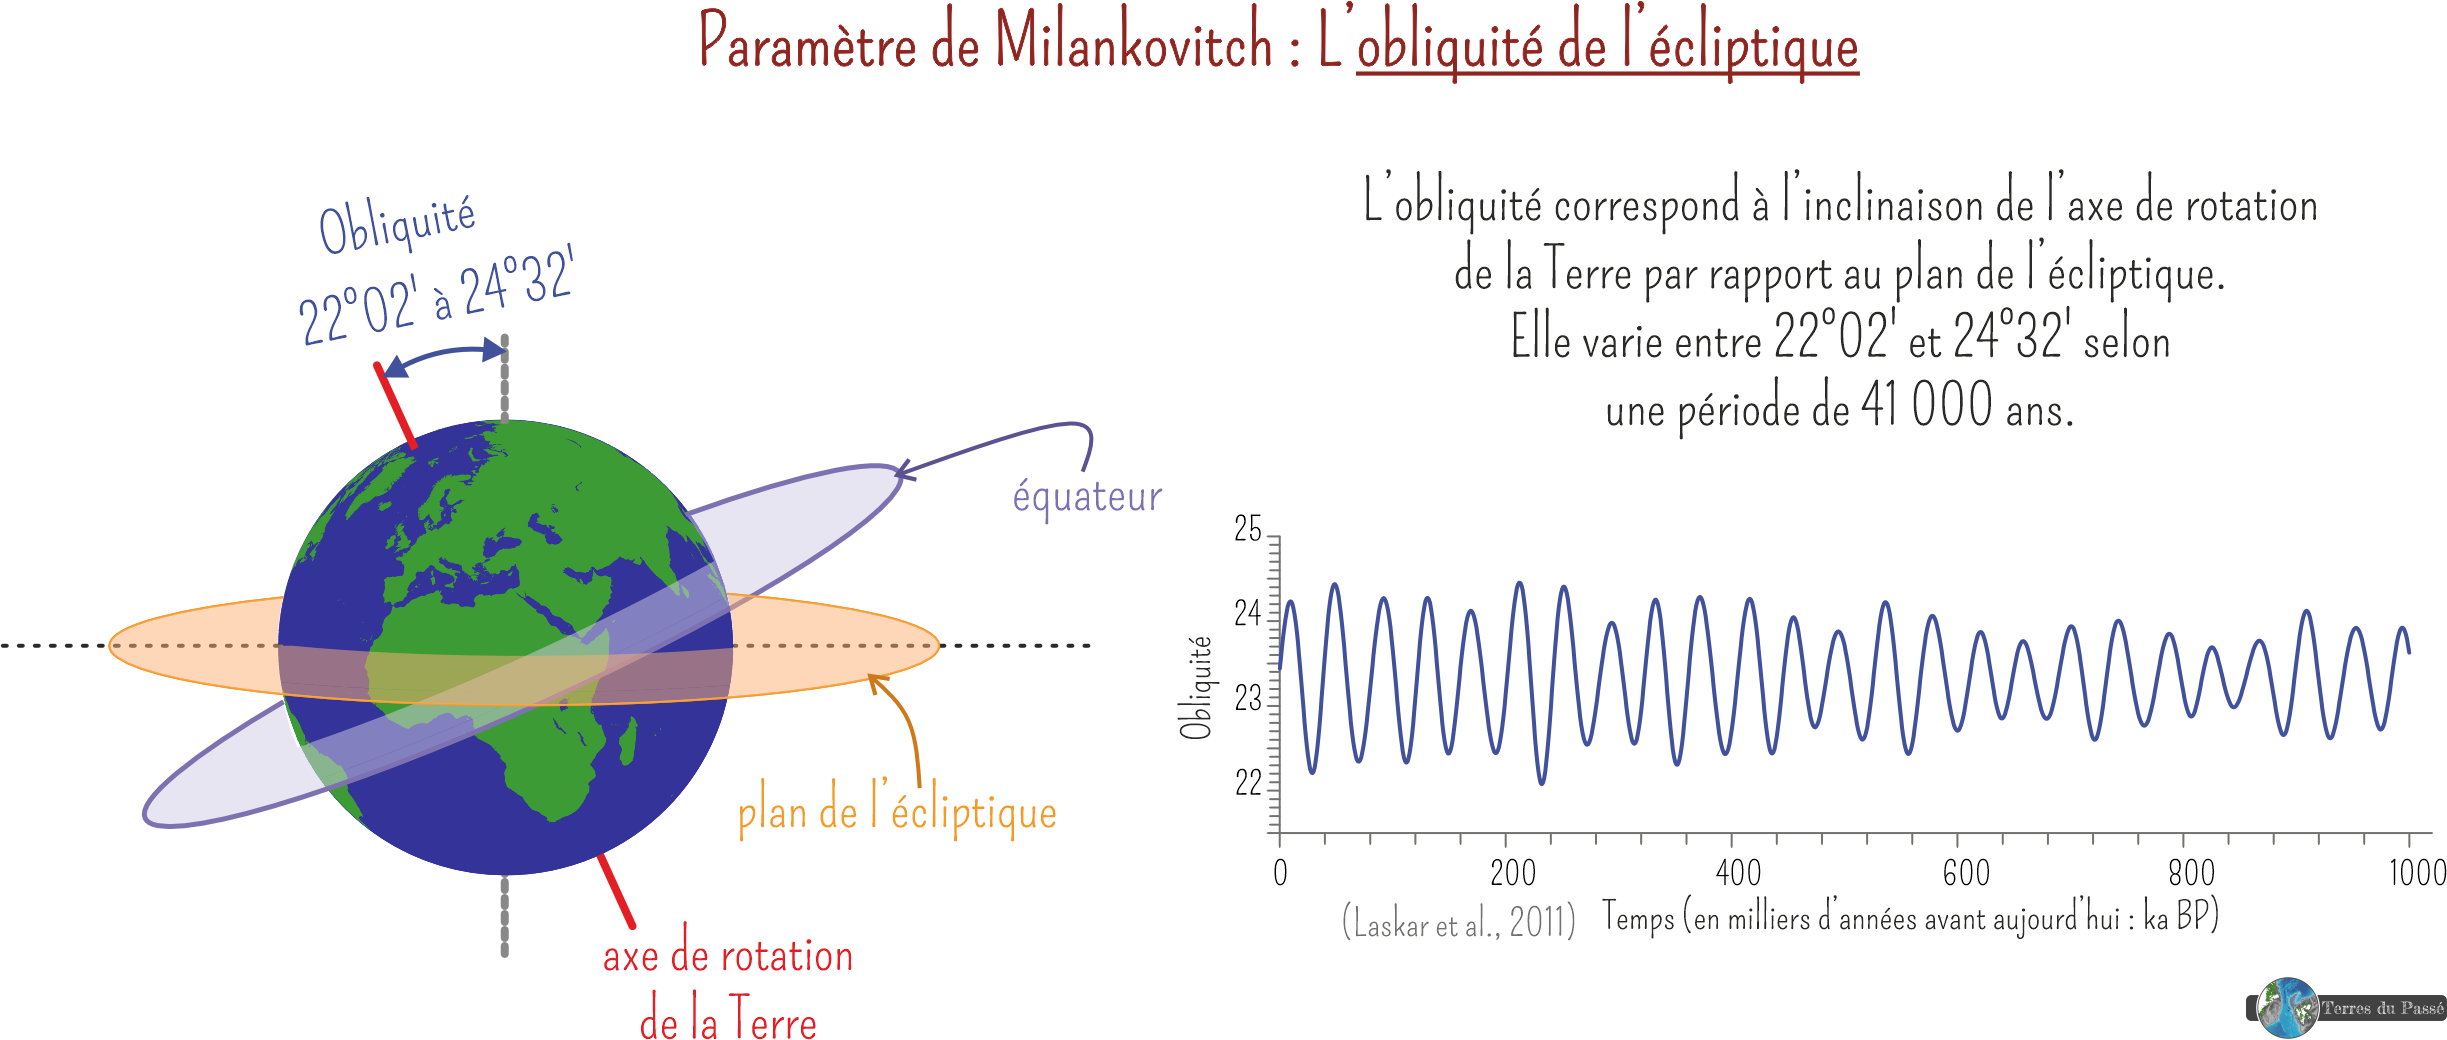 Paramètre de Milankovitch : obliquité varie entre 22°02' et 24°32'